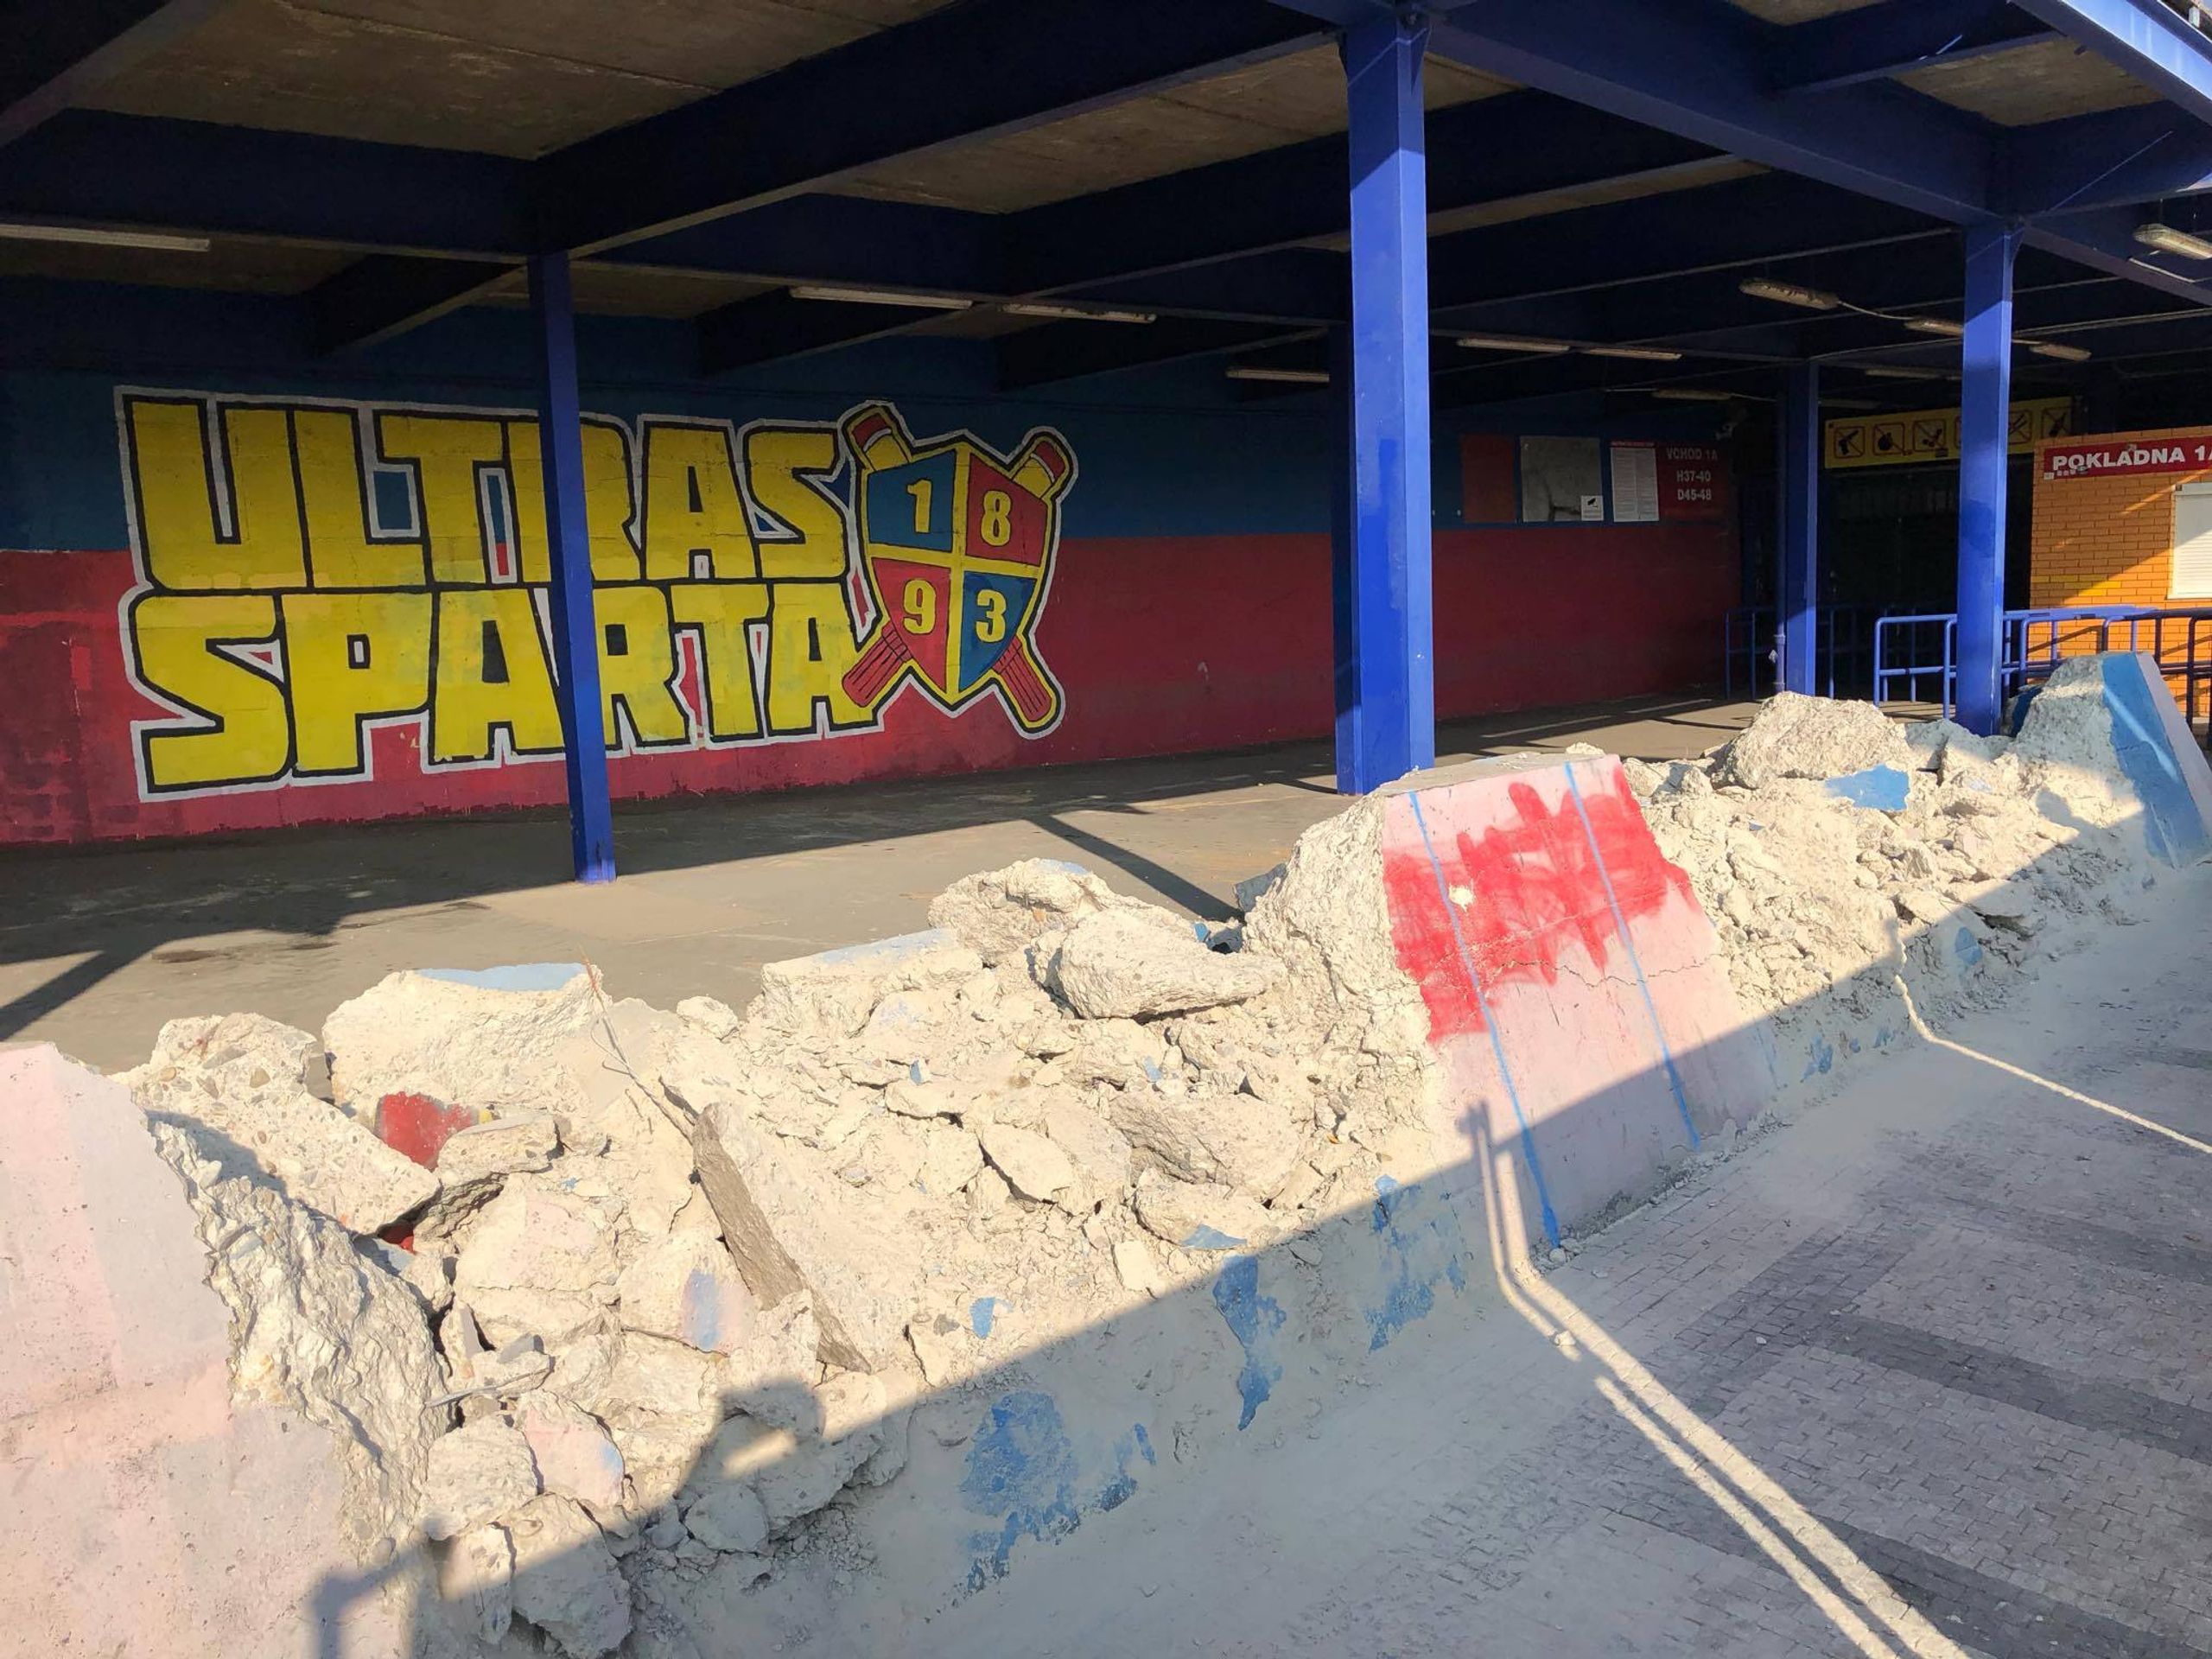 Bourání zdí na stadionu Sparty - 5 - GALERIE: Bourání zdí u fotbalového stadionu Sparty (5/7)